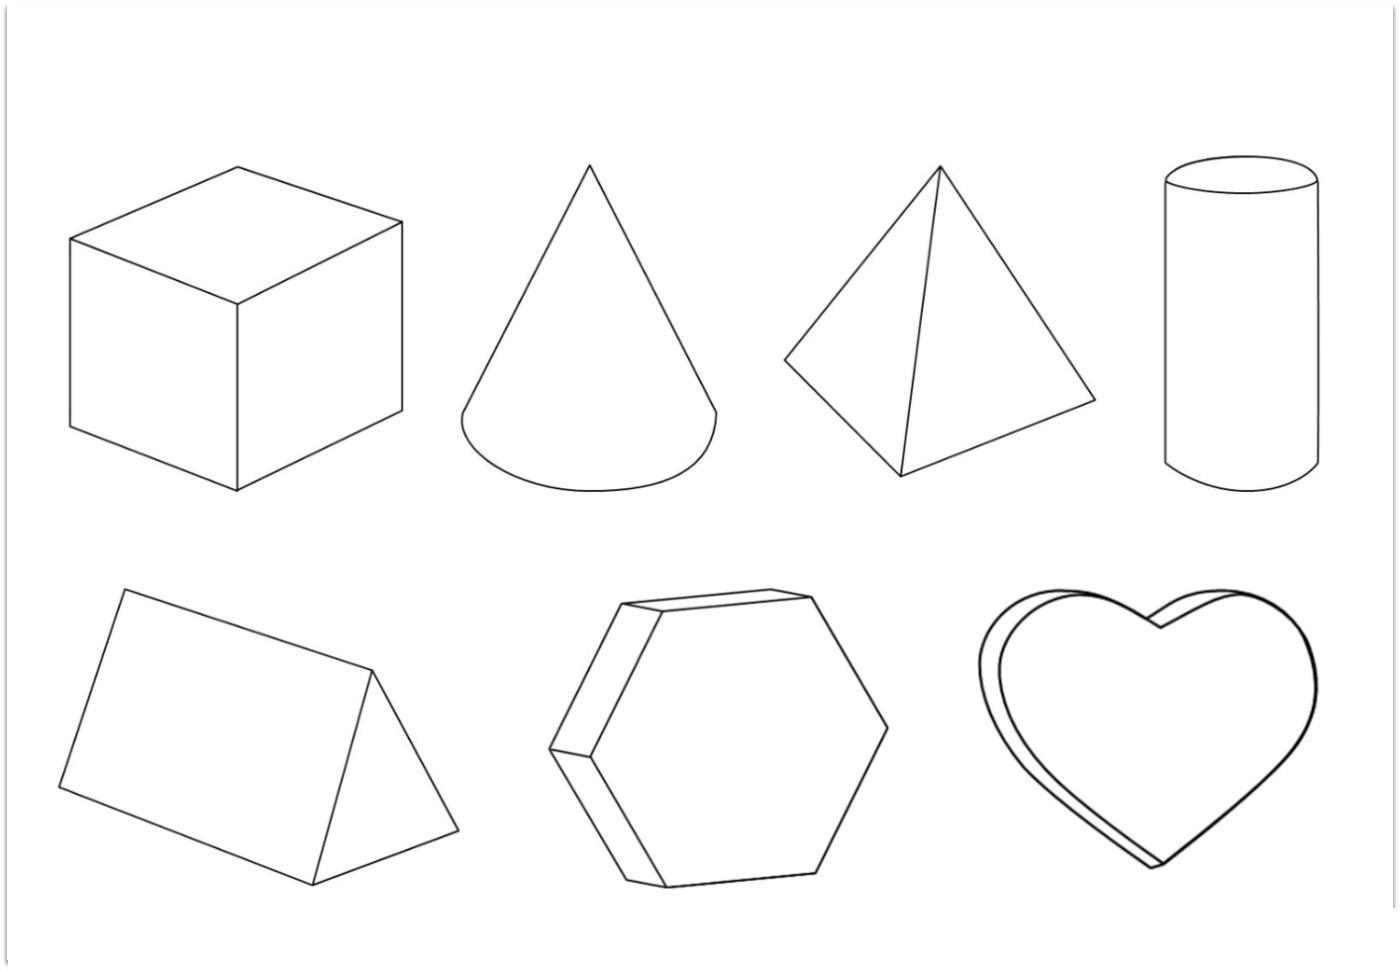  Раскраски геометрические фигуры из бумаги объемные геометрические фигуры контур, шаблоны